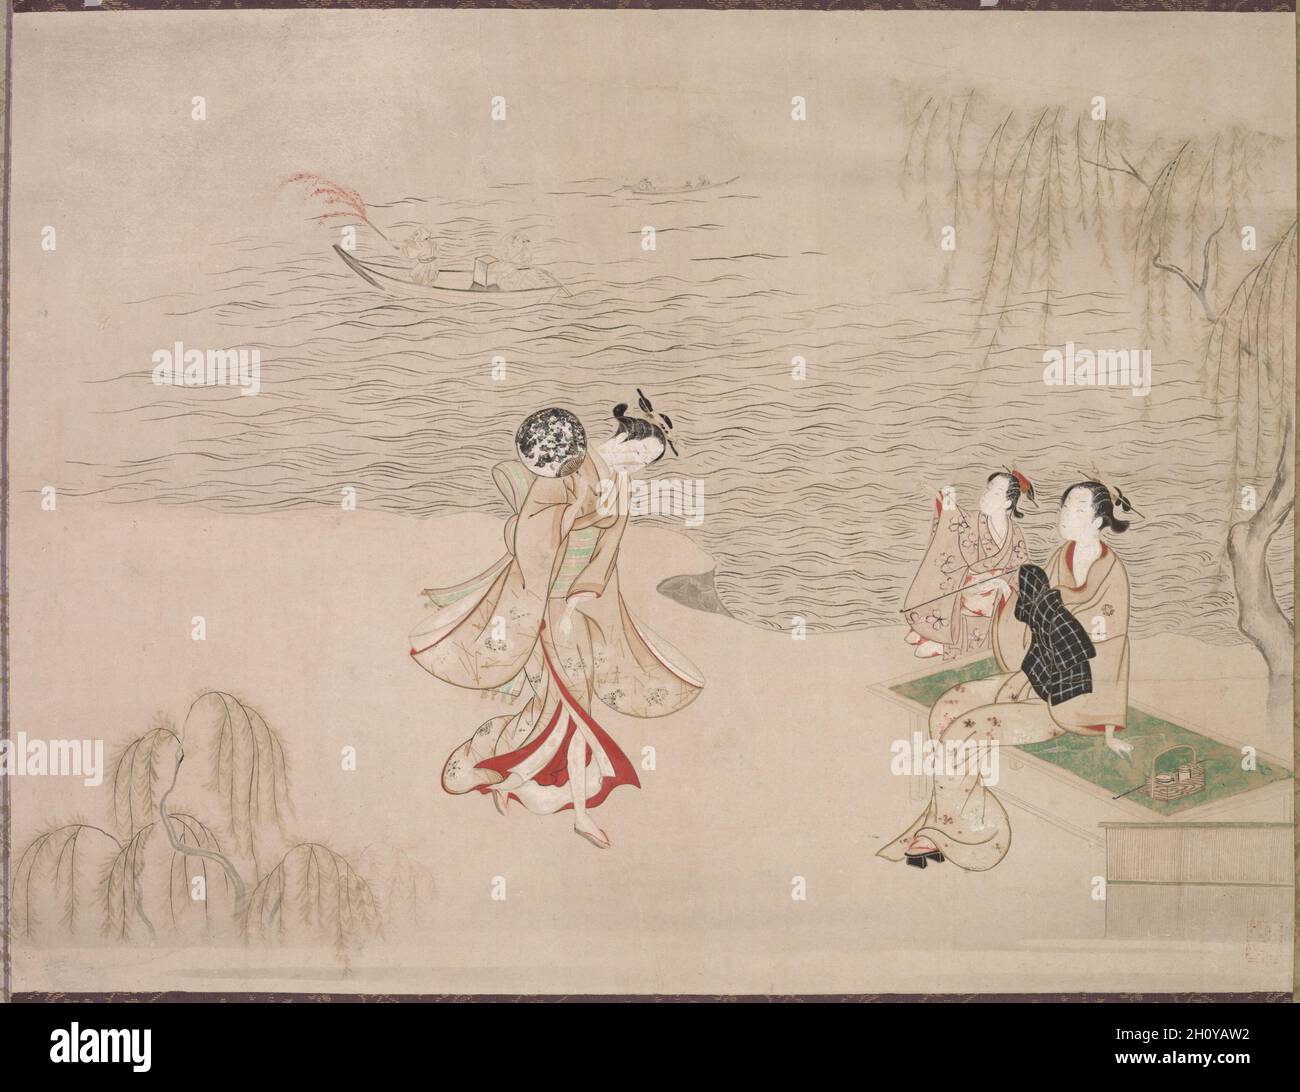 Beautés au bord de la mer, c.1765–92.Ippitsusai Bunchō (japonais, dates inconnues).Rouleau suspendu; encre et couleur sur papier; image: 41.3 x 54 cm (16 1/4 x 21 1/4 po.); hors tout: 134 x 72.8 cm (52 3/4 x 28 11/16 po.).Groupe ?décrit le sujet populaire de refroidissement par l'eau à la fin du printemps ou en début de soirée d'été, comme l'a suggéré le saule.La dame assise apprécie son tabac à pipe, un passe-temps populaire pour les femmes Edo.En arrière-plan, certains feux d'artifice sont mis à l'arrêt d'un petit bateau. Banque D'Images